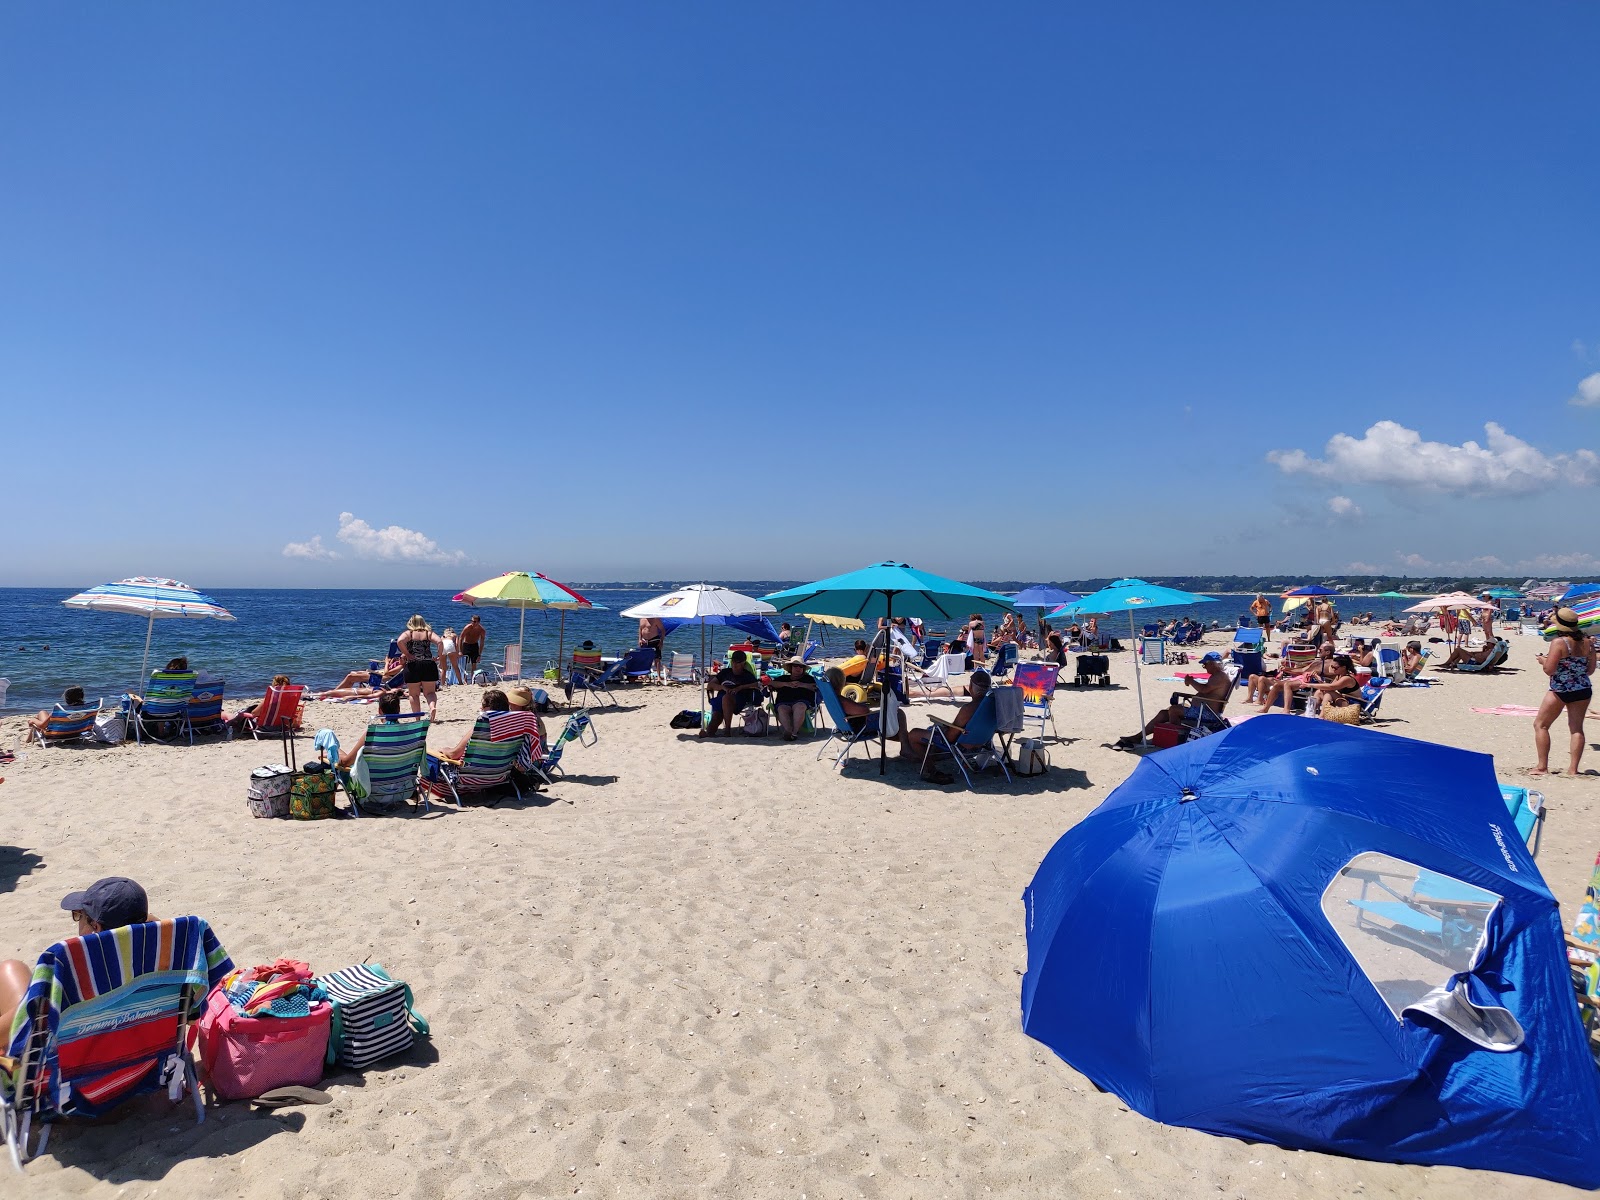 Craigville Beach'in fotoğrafı - rahatlamayı sevenler arasında popüler bir yer